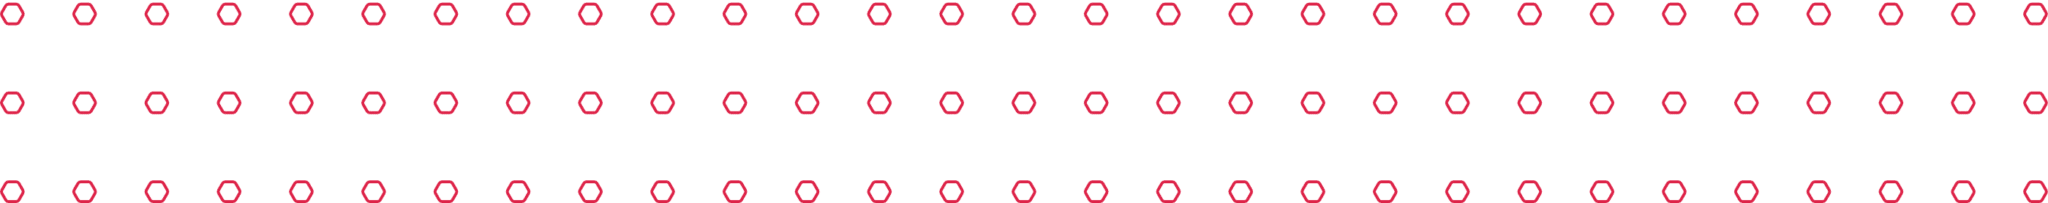 Brinicombe B2B Hexagons